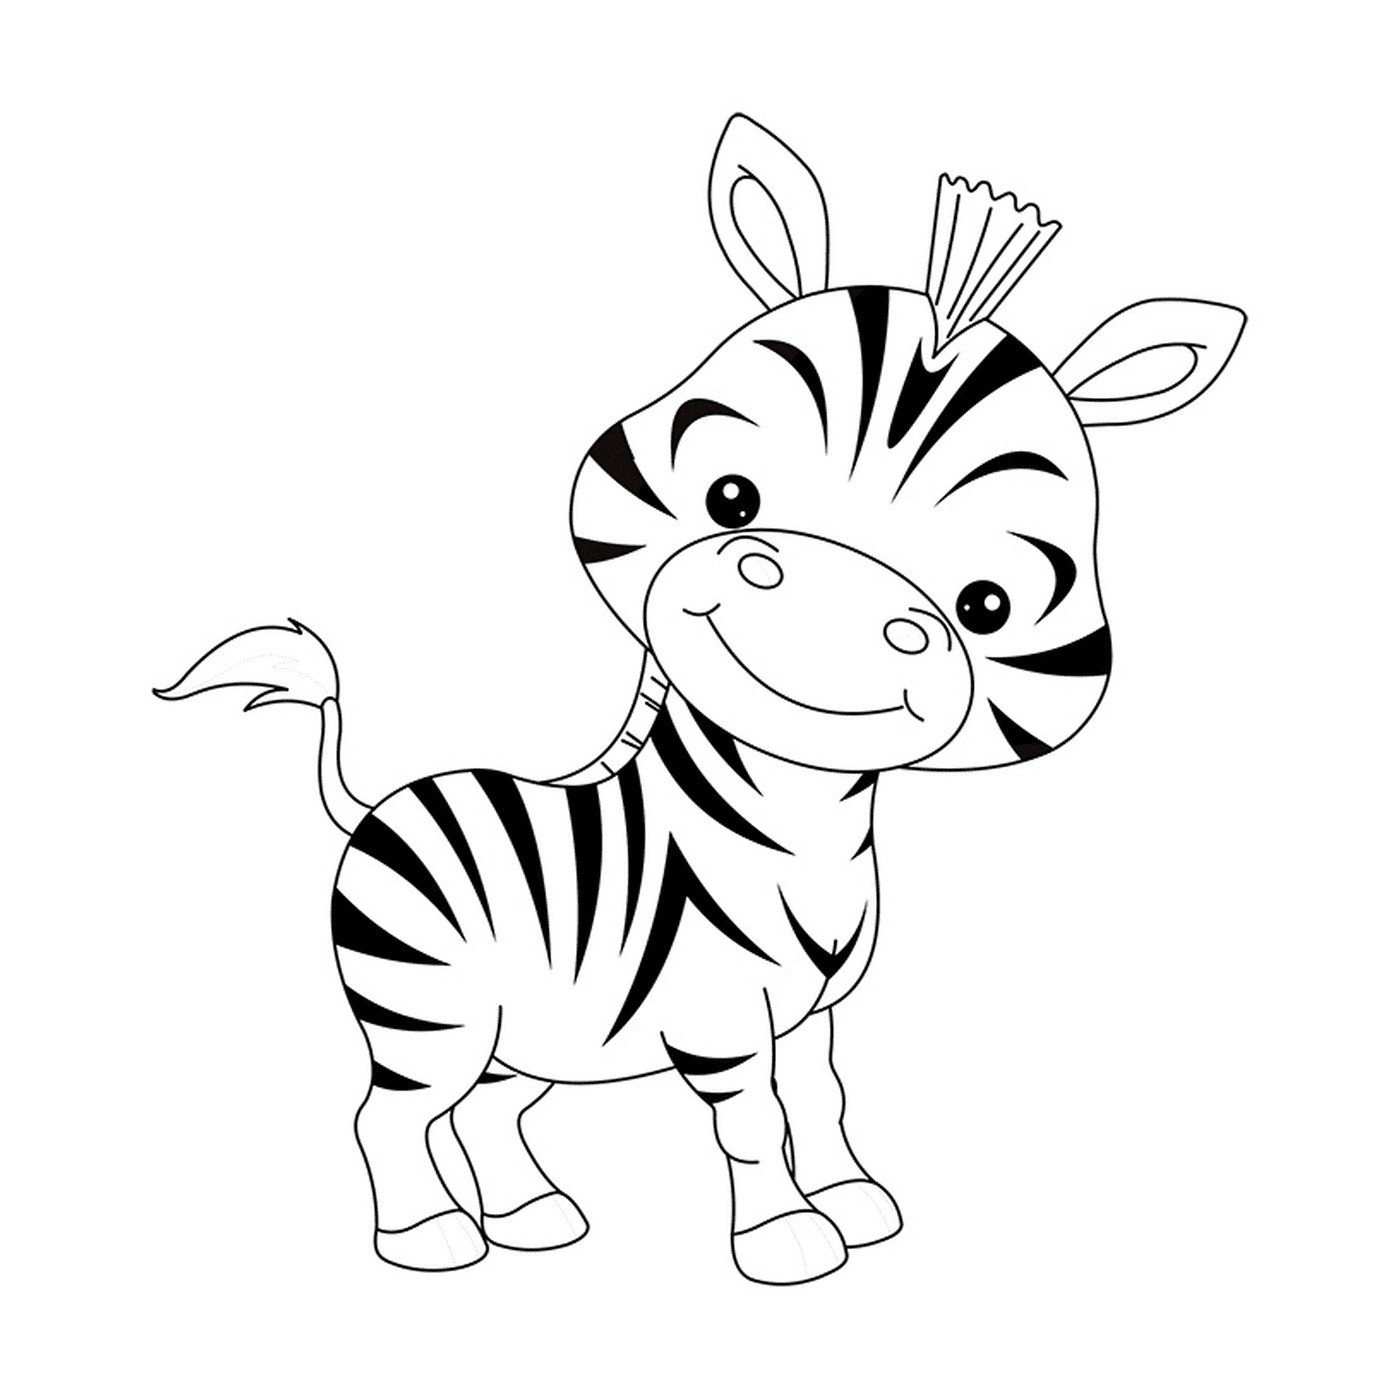  A zebra 